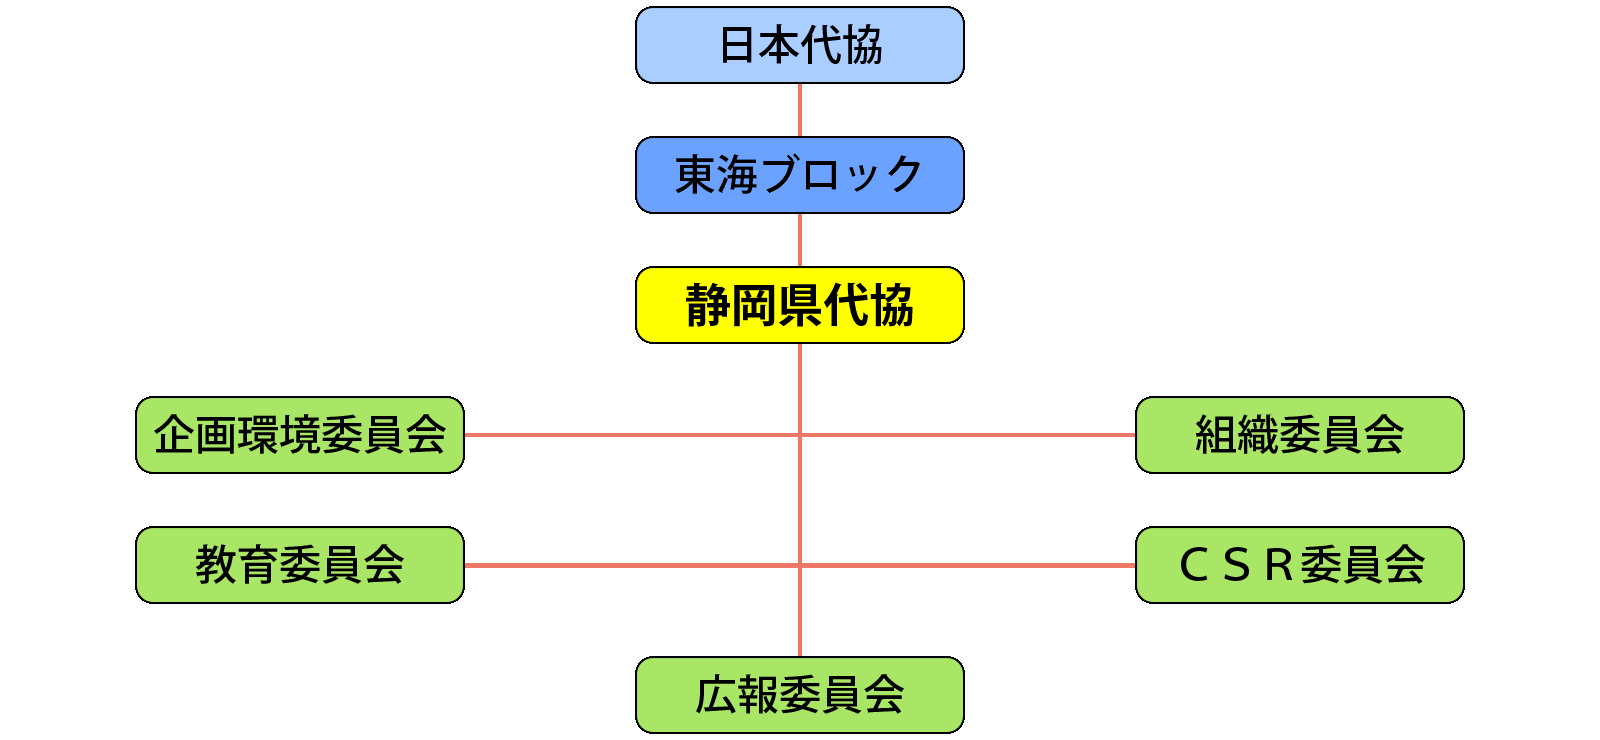 静岡県損害保険代理業協会組織図